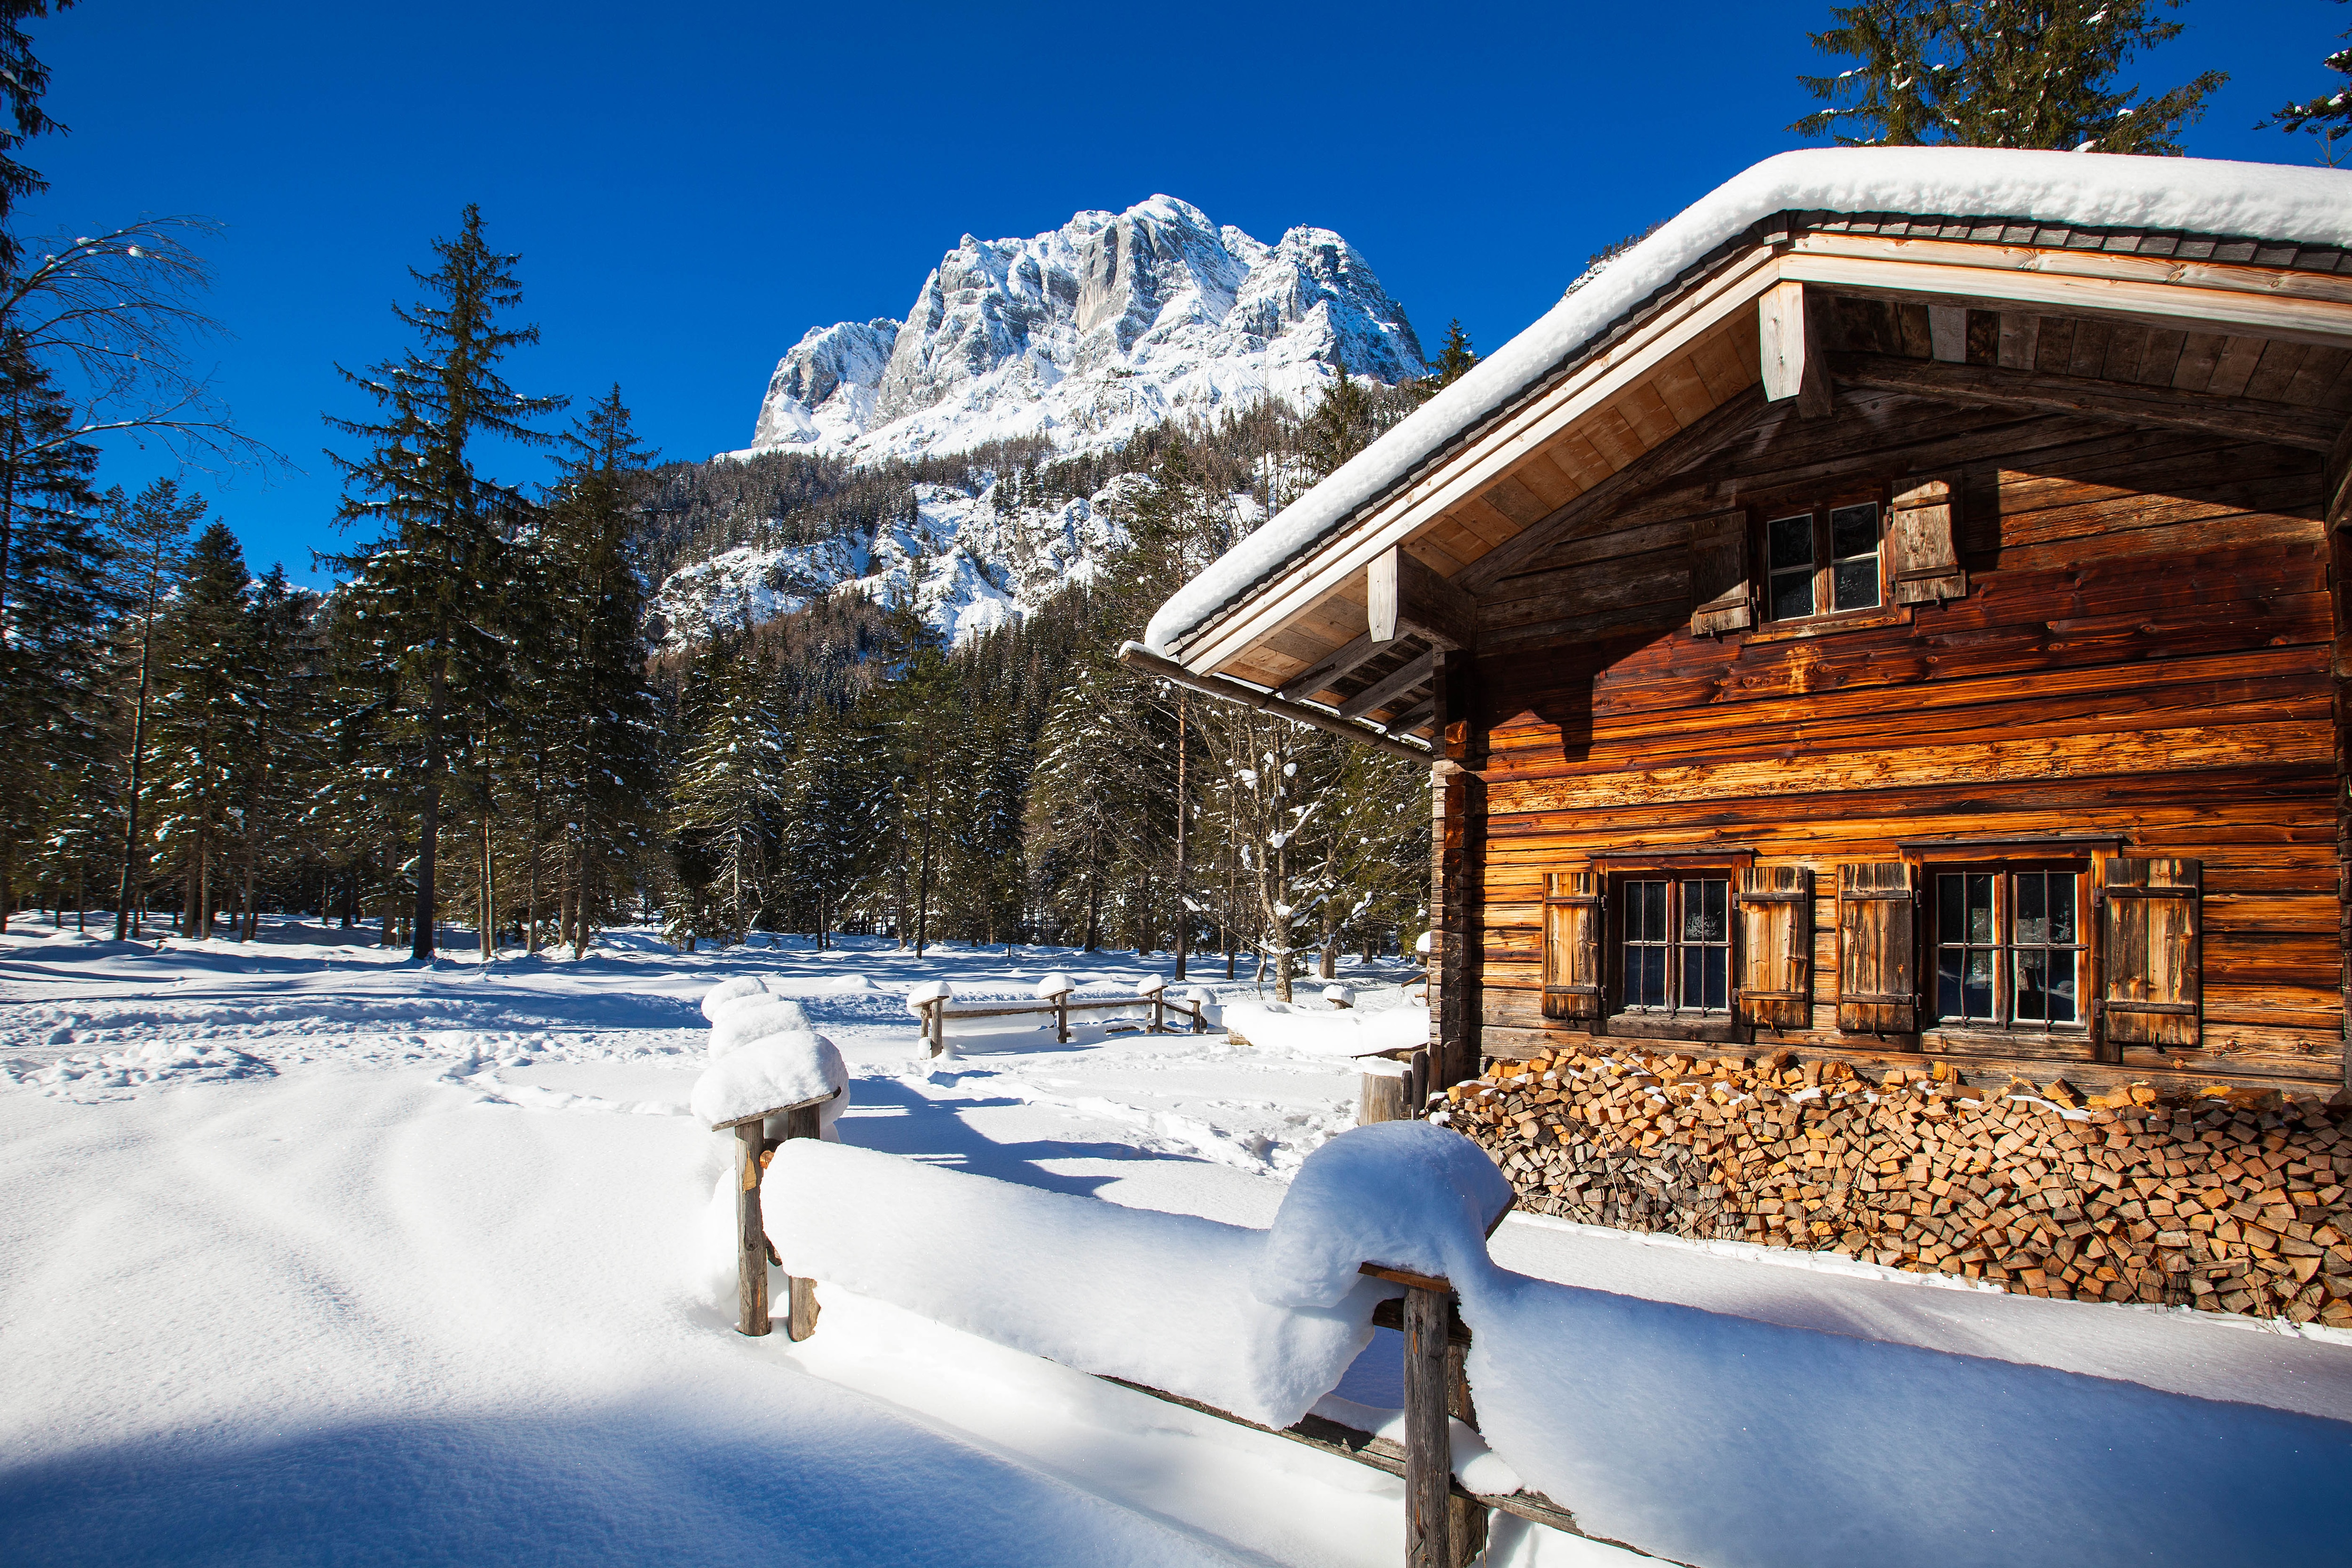 Winterwandern im Berchtesgadener Land